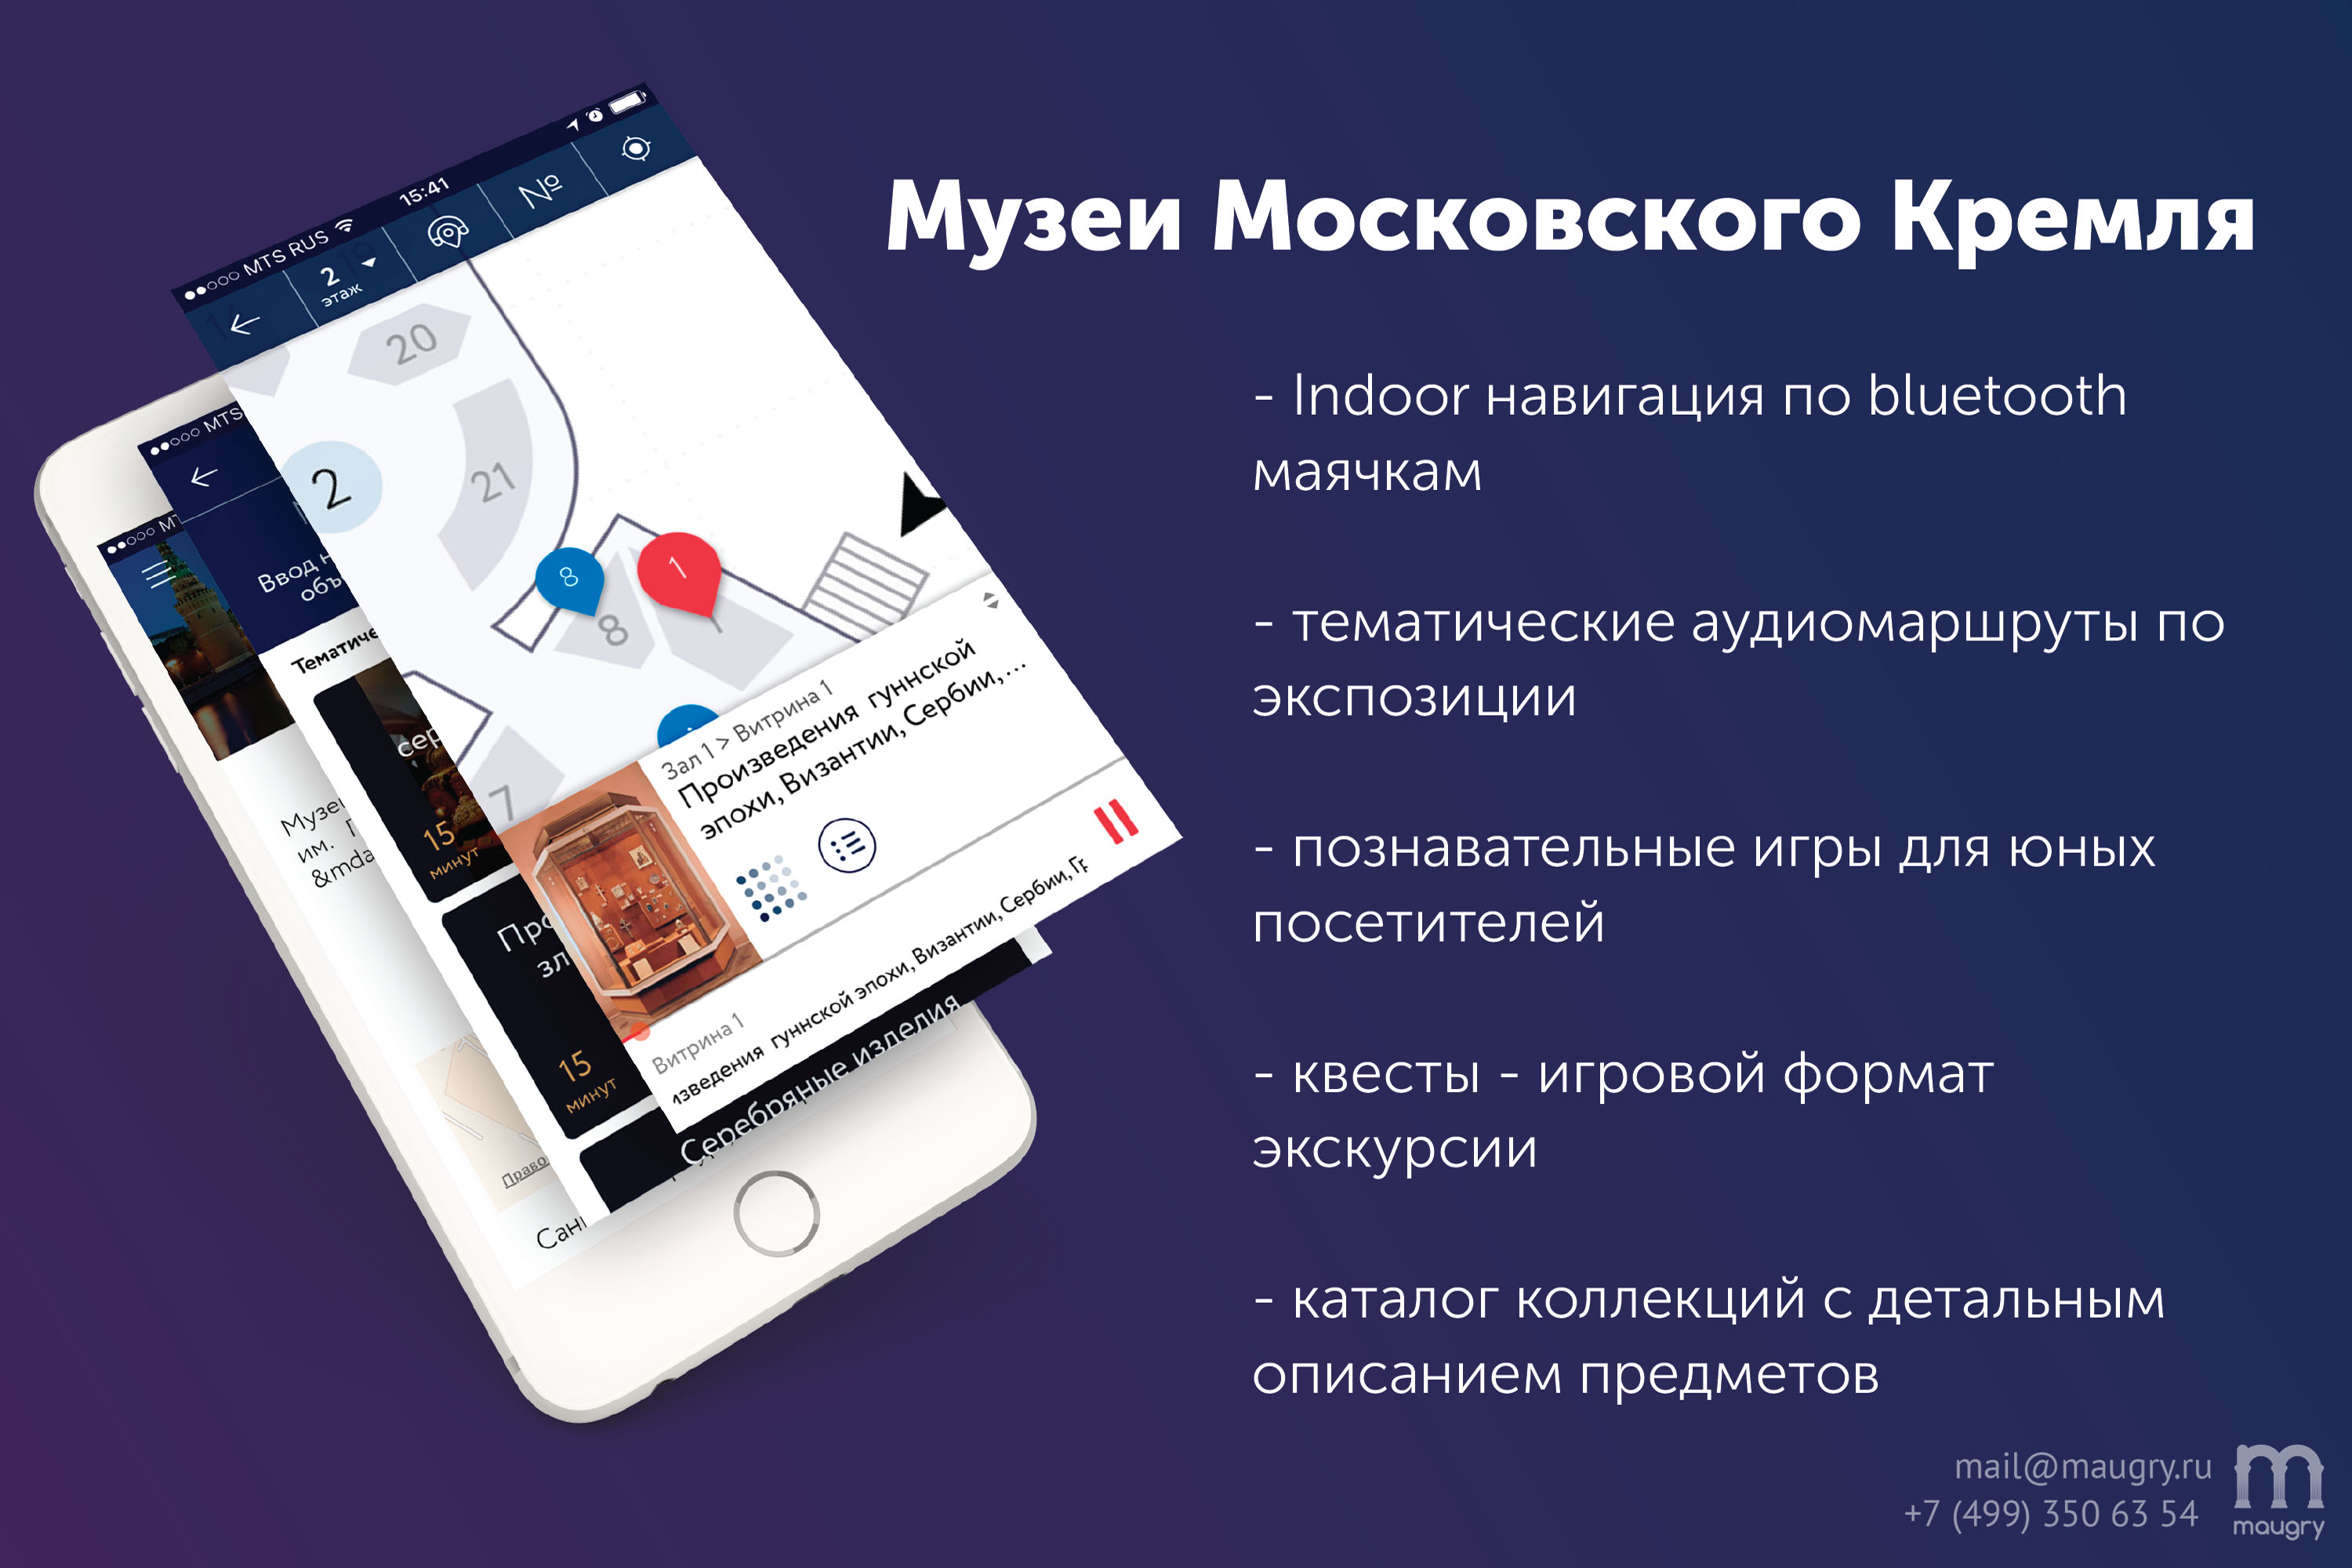 Мобильное приложение «Музеи Московского Кремля. Оружейная палата» доступно для скачивания